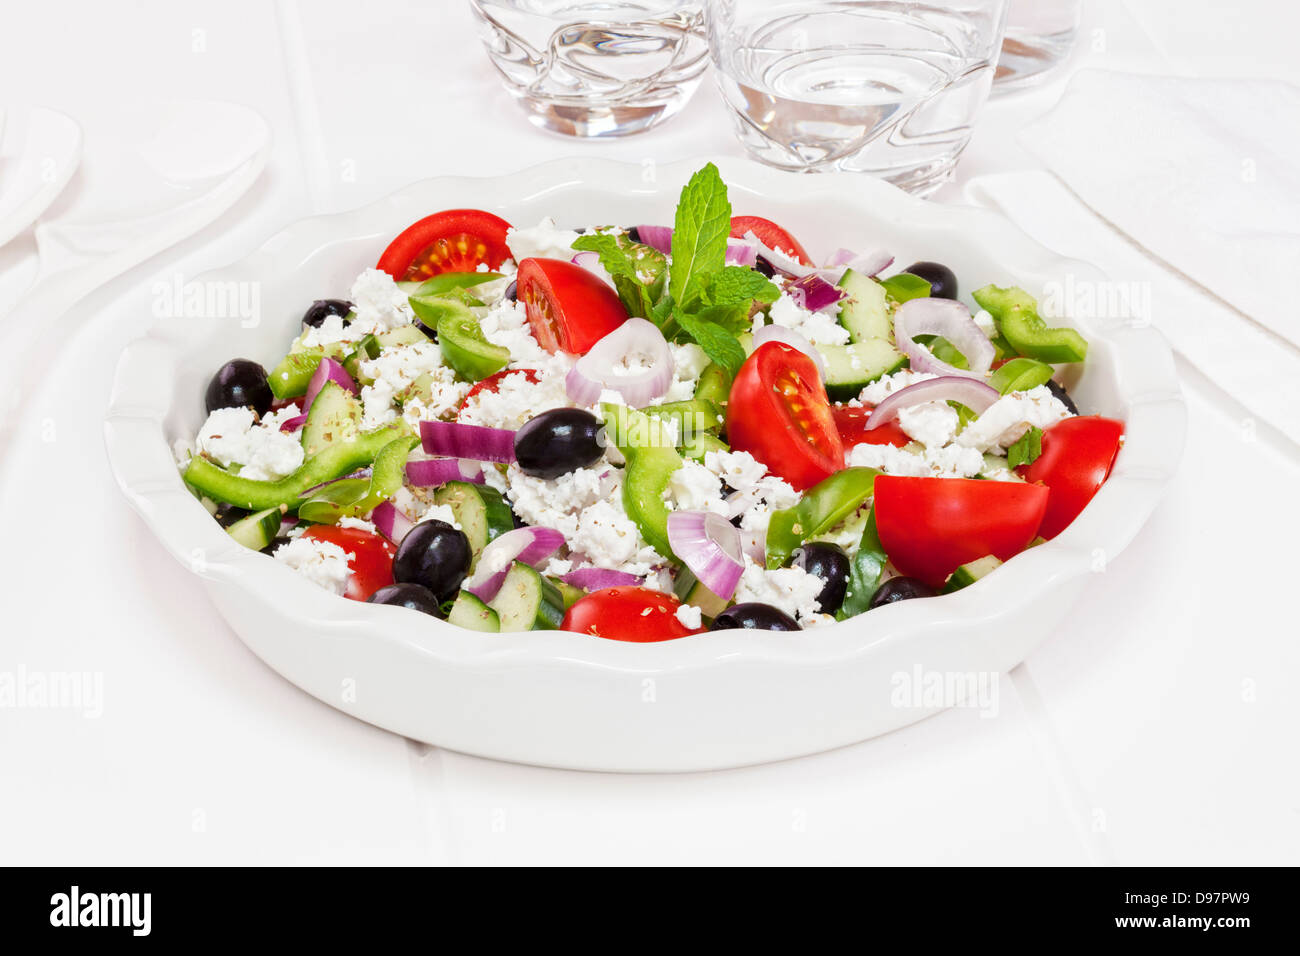 Salade grecque salade faite à partir de la populaire, tomates, concombre, poivron vert, olives noires, menthe, origan et le fromage feta. Banque D'Images